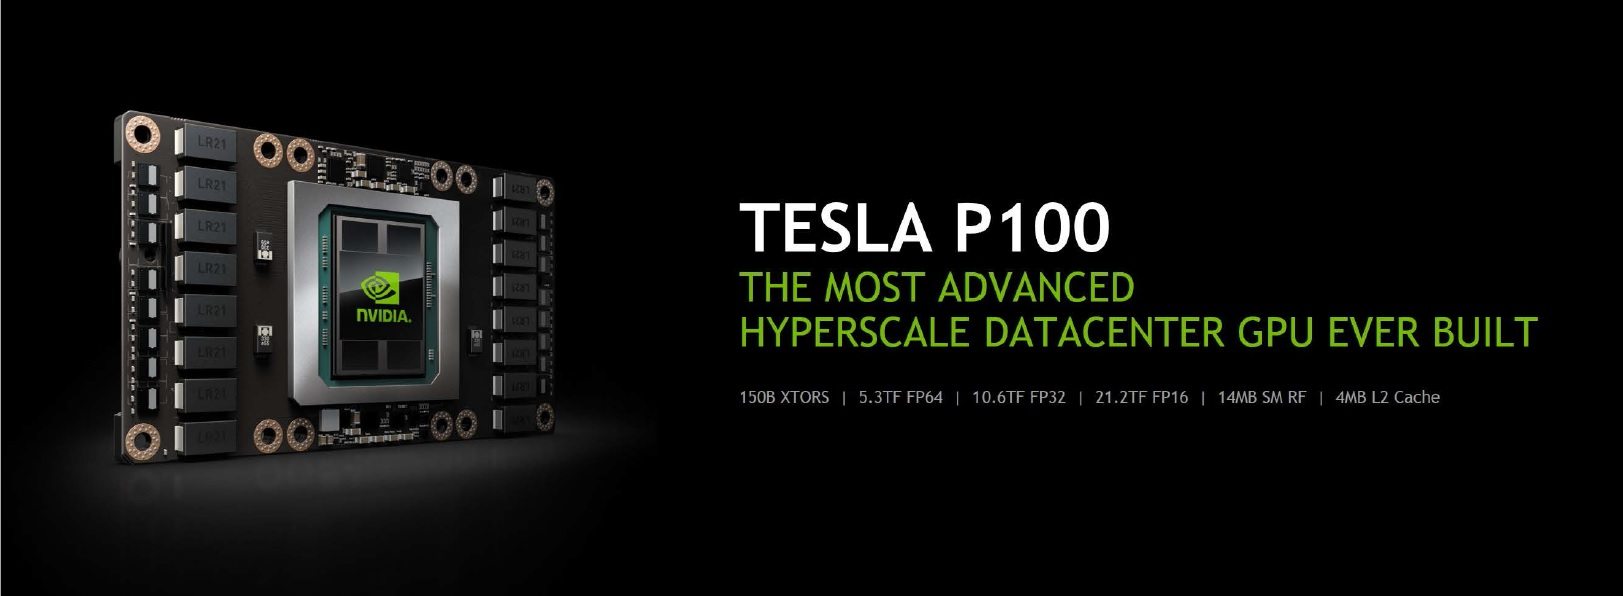 Nvidia Pascal Tesla P100